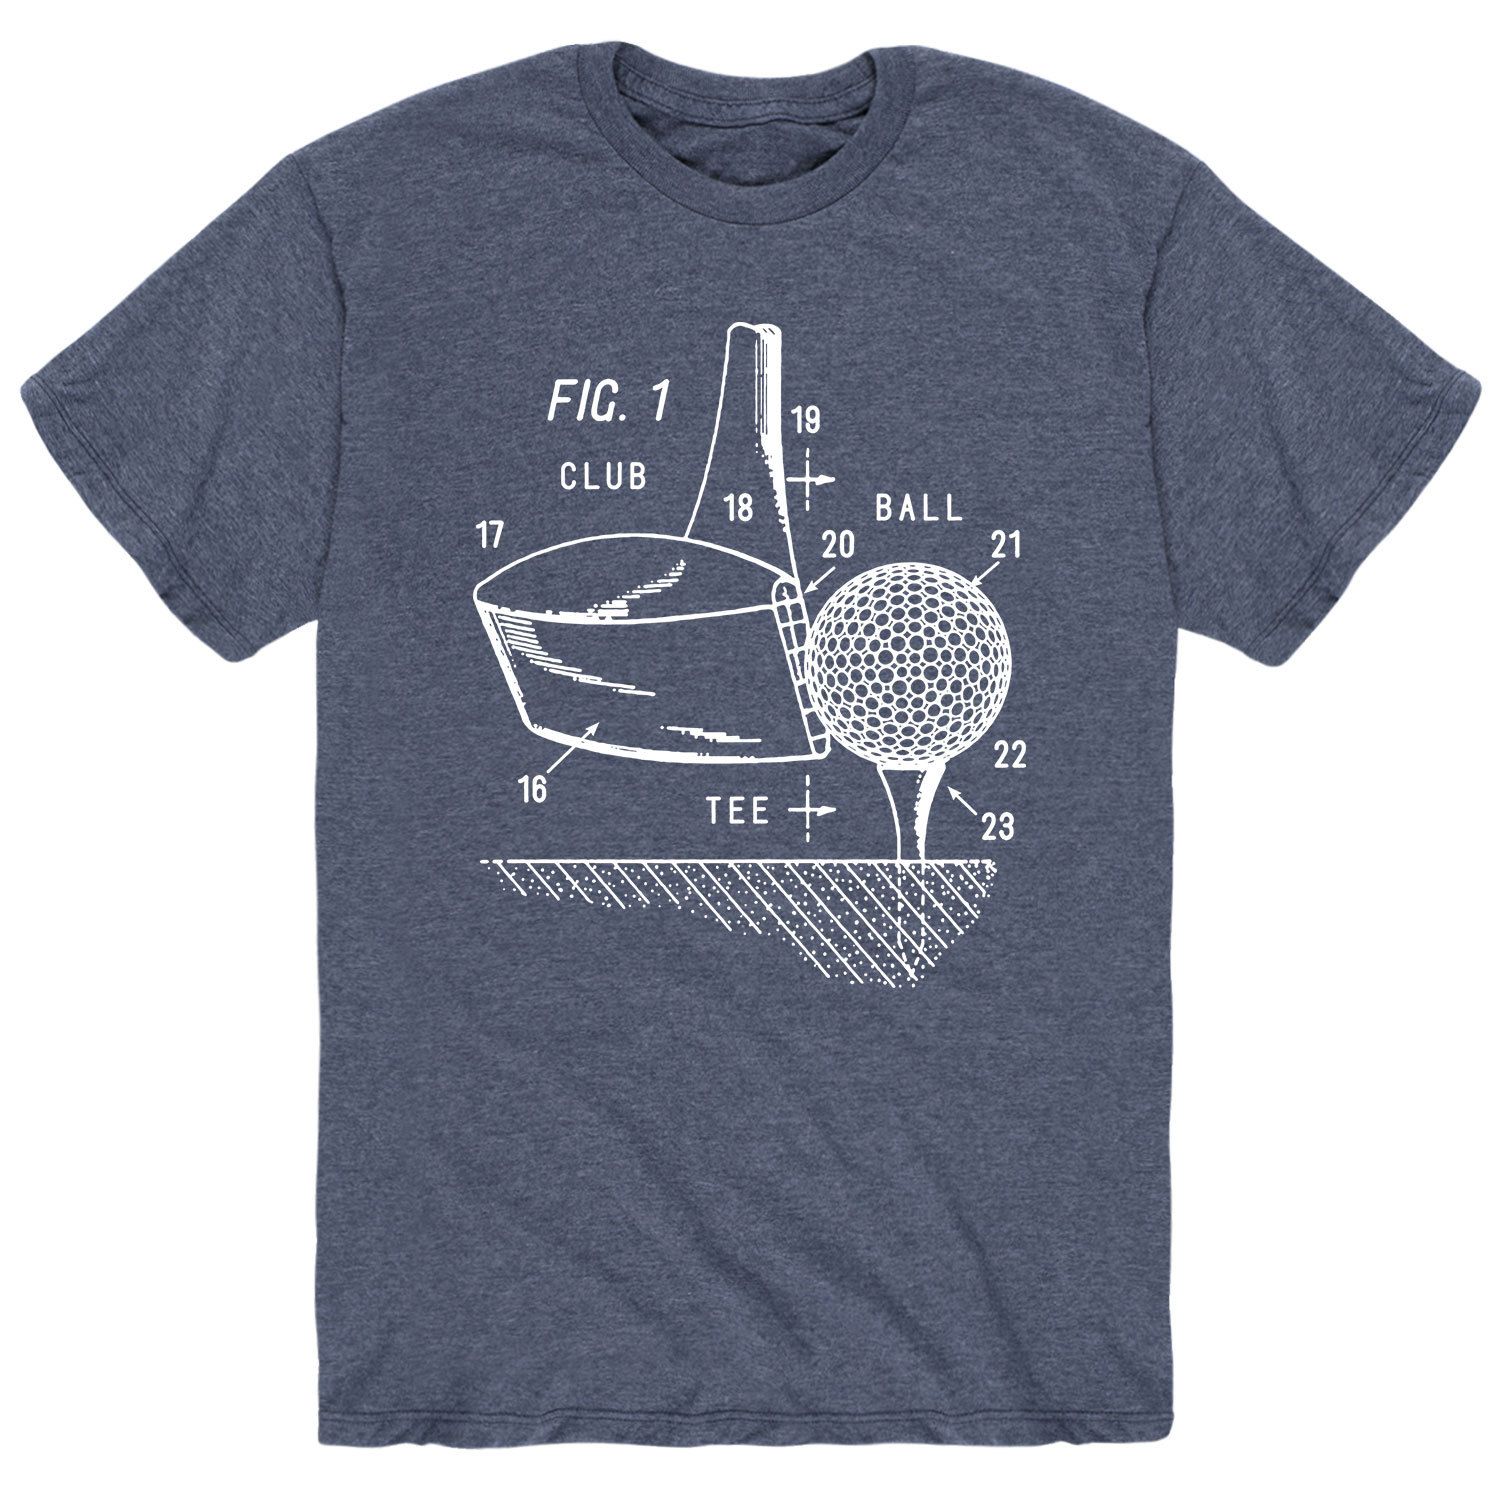 Мужская футболка с клюшкой и мячом для гольфа Licensed Character мужская футболка собака с мячом 2xl черный